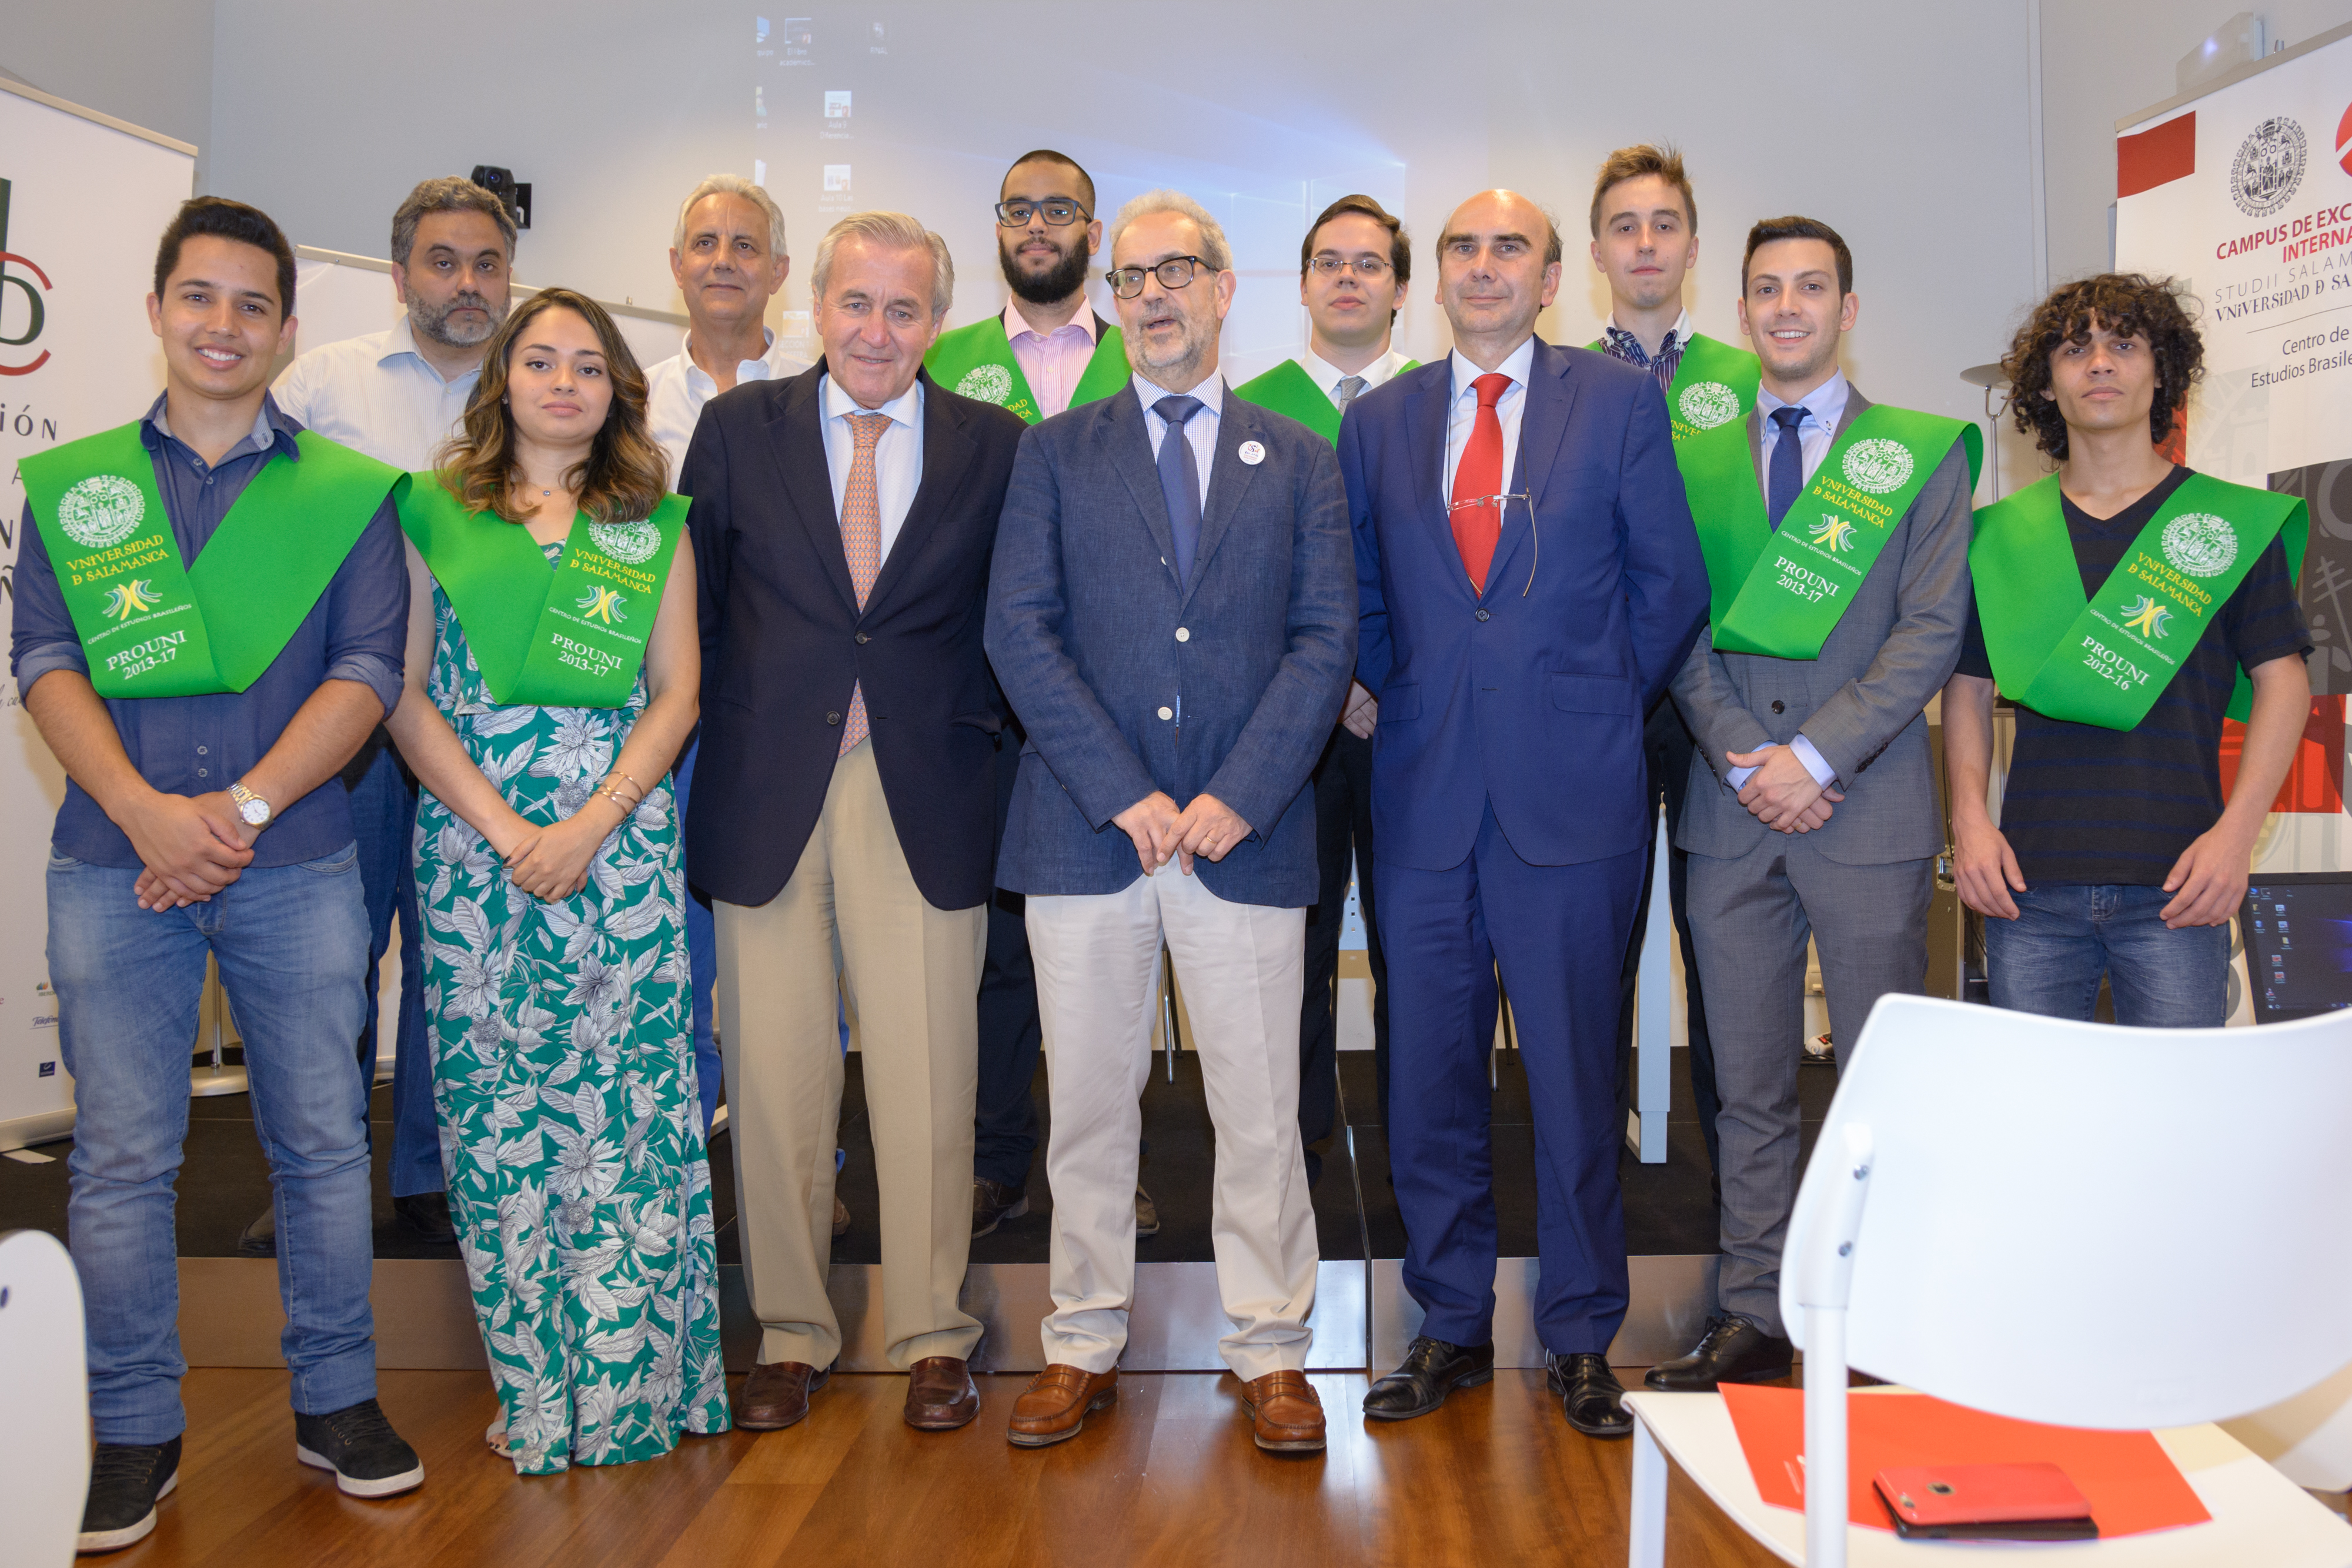 Diez alumnos brasileños del programa Prouni celebran su graduación en la Universidad de Salamanca